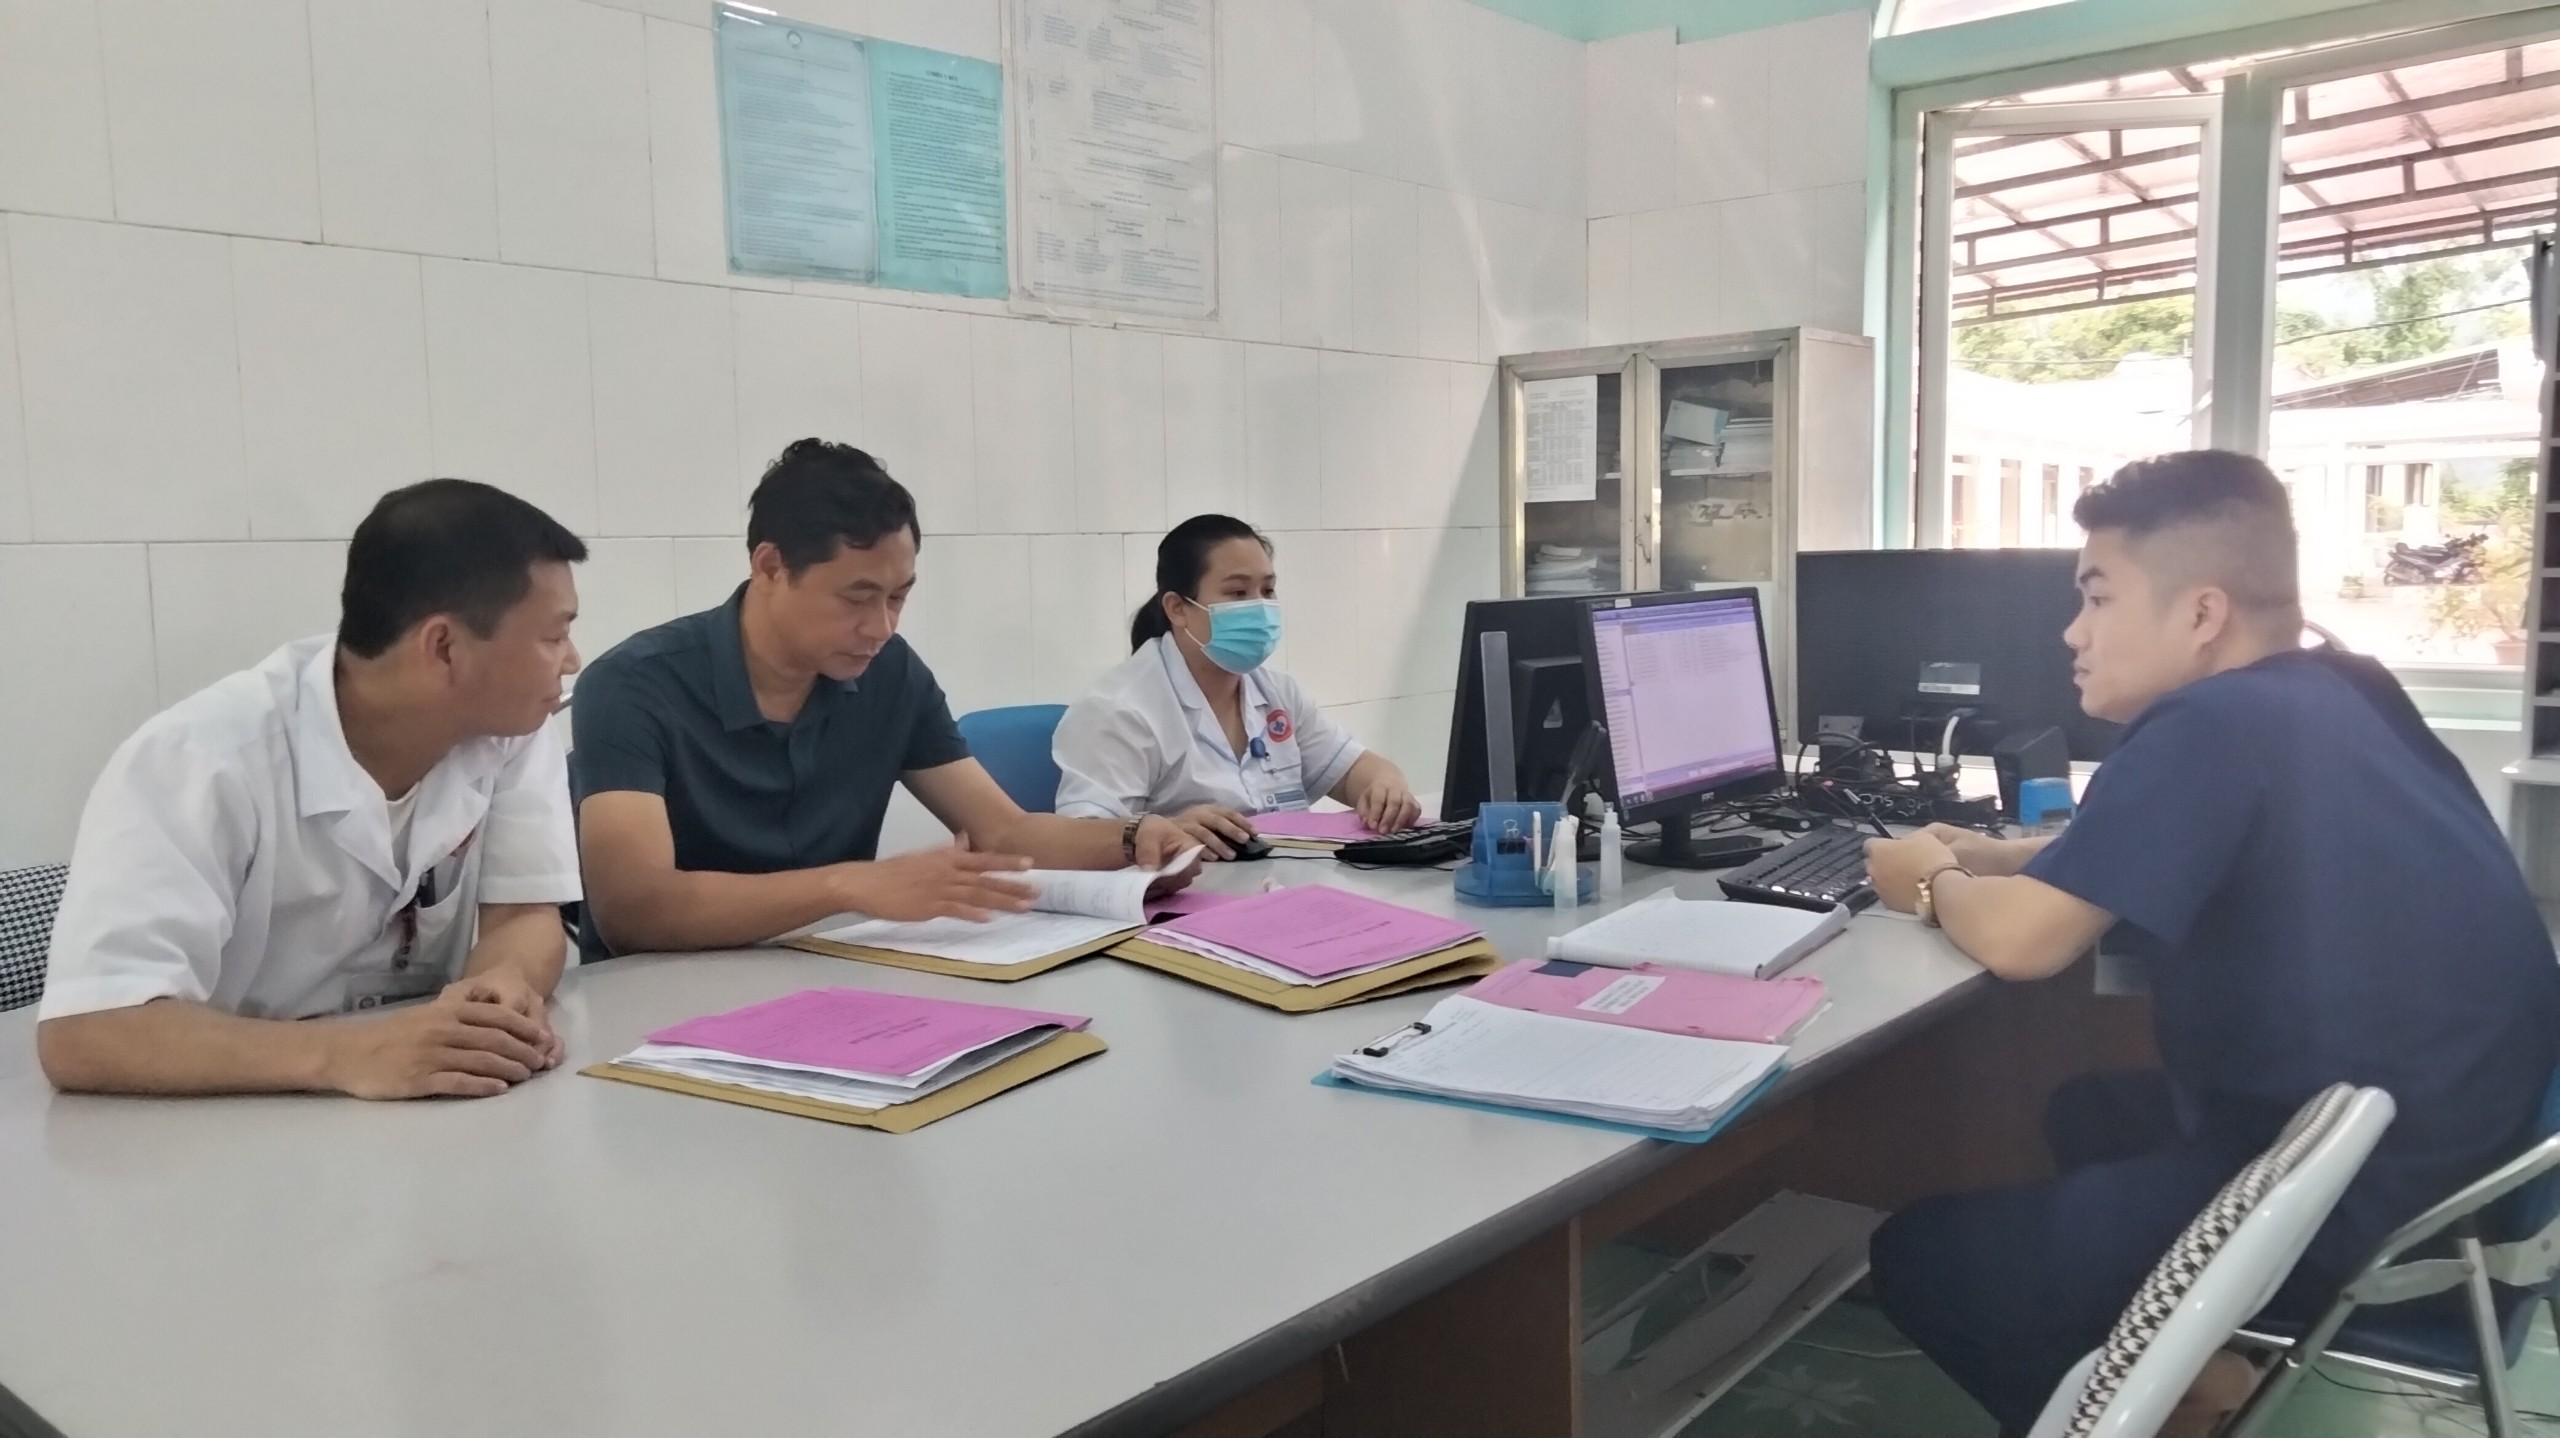 1.	Đồng chí Nguyễn Văn Giao, Trưởng đoàn kiểm tra, kiểm tra hồ sơ bệnh án tại khoa Hồi sức cấp cứu BVĐK Xín Mần